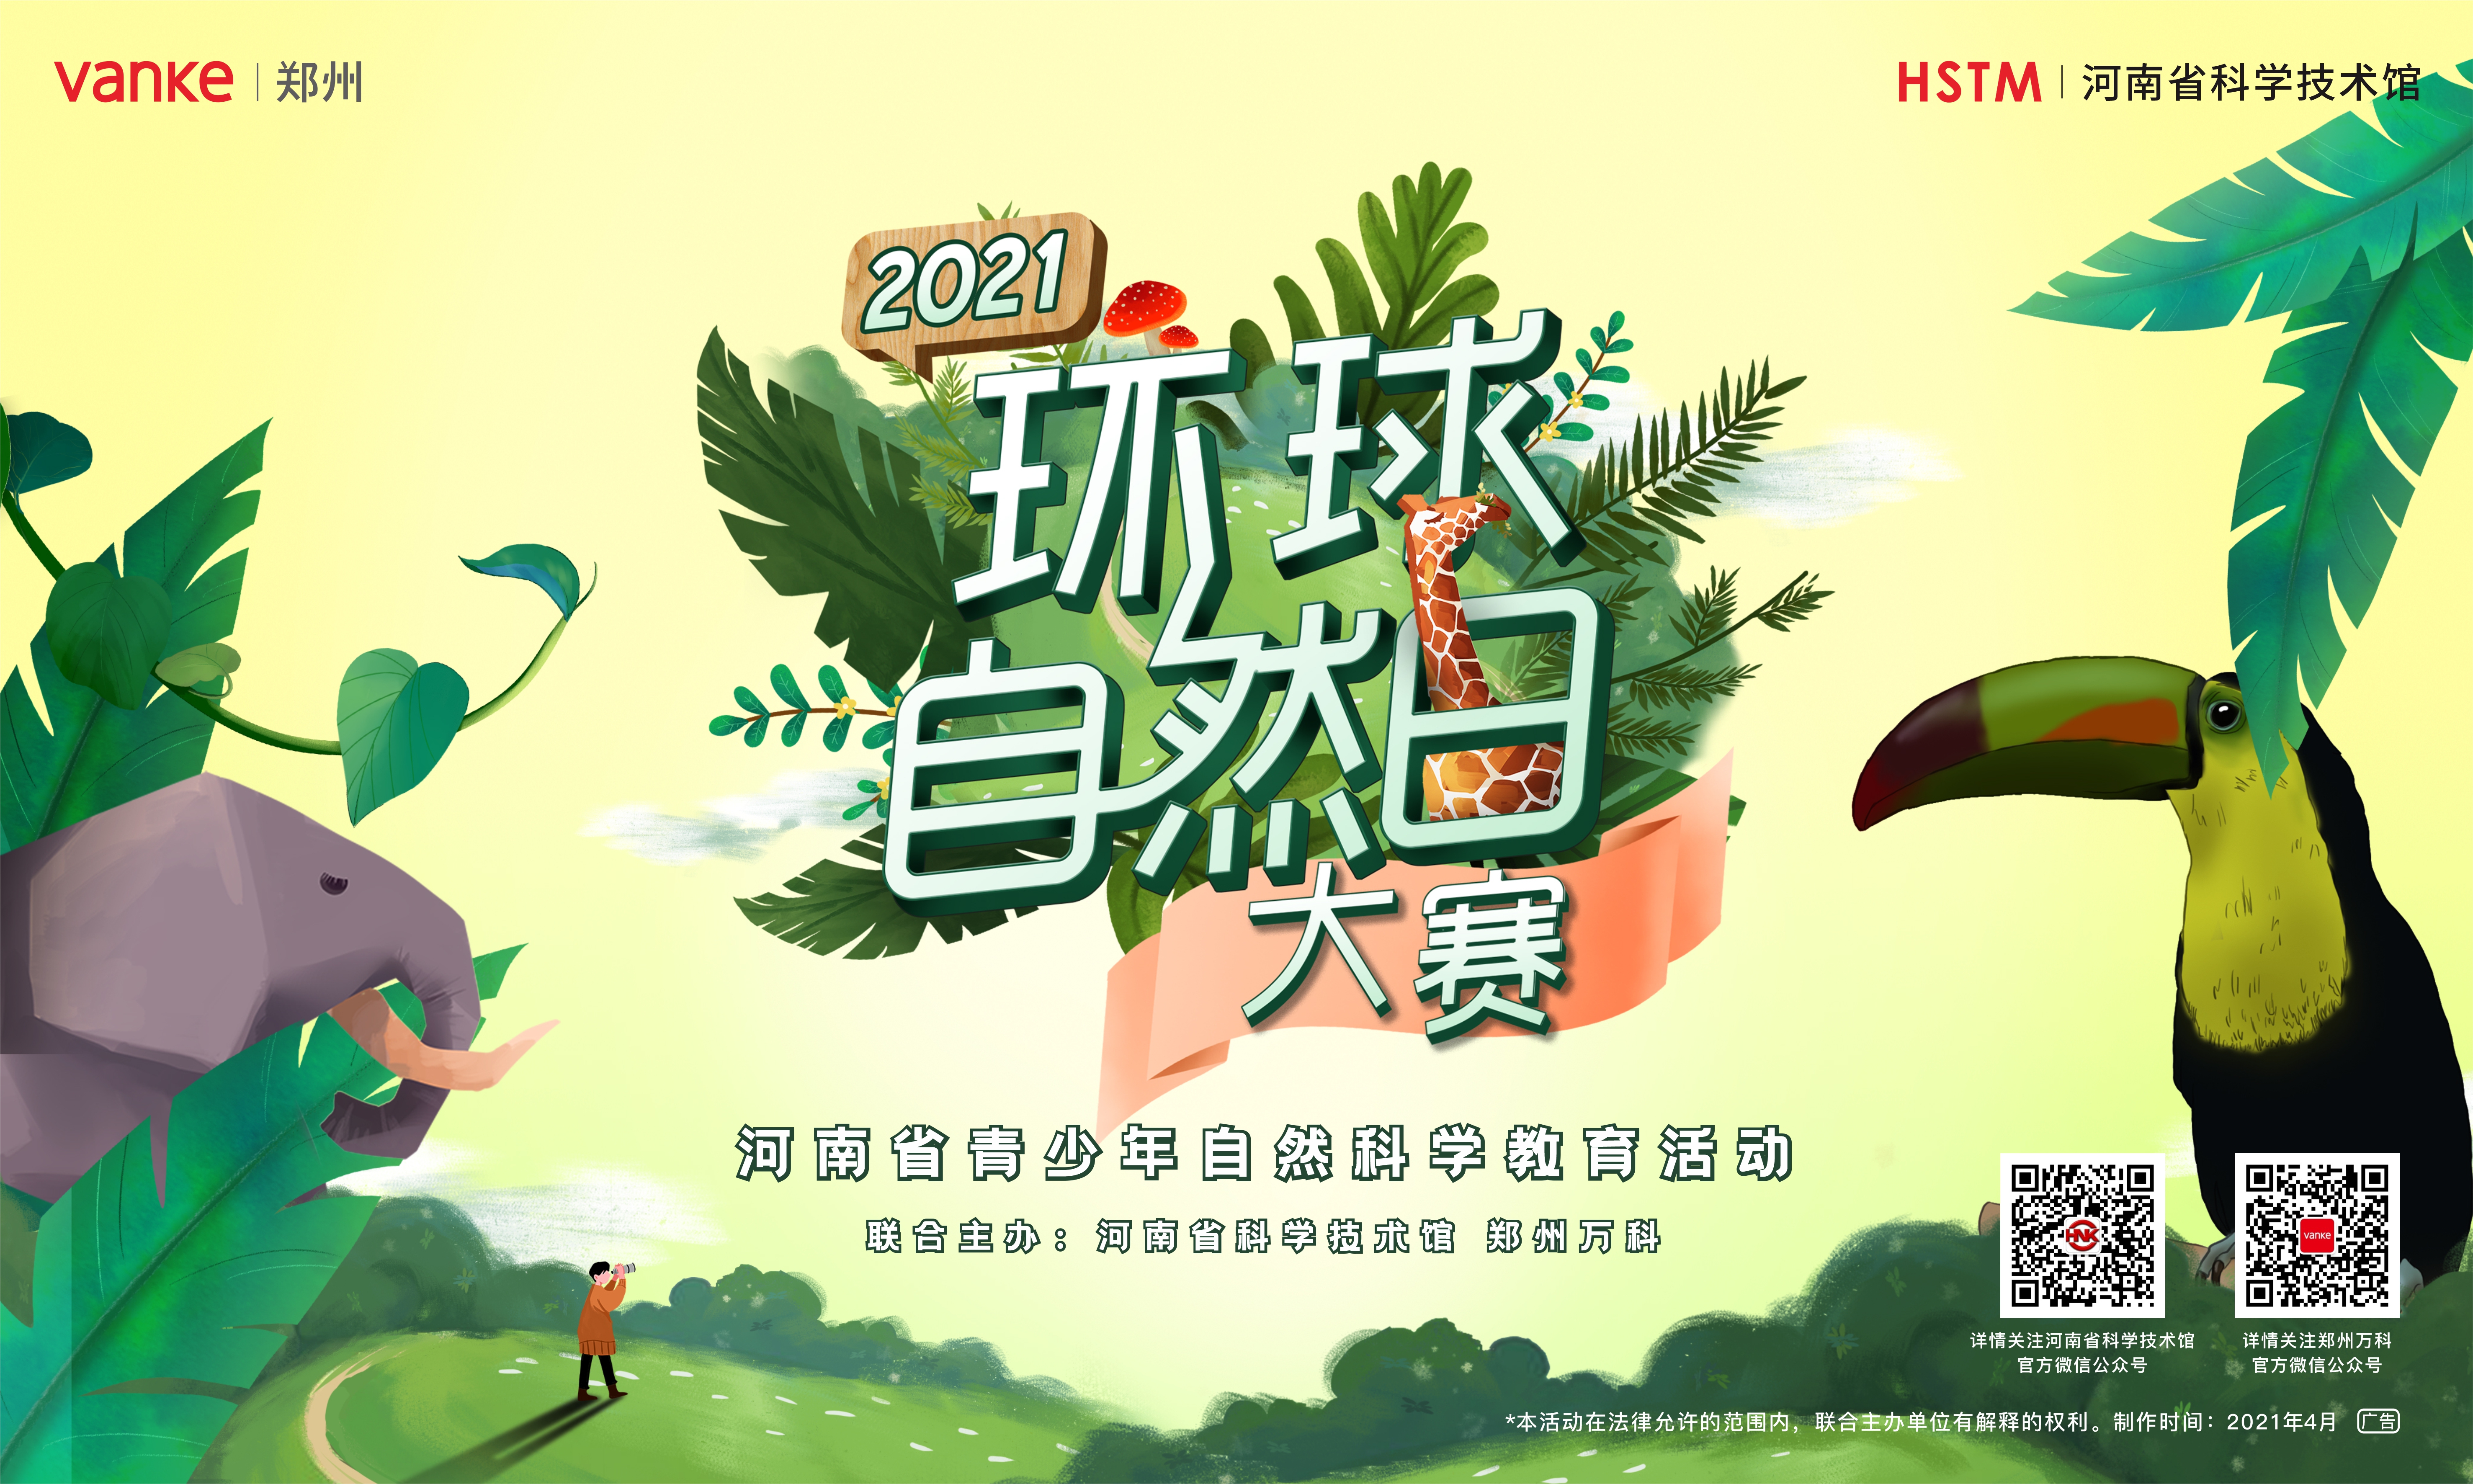  河南省青少年自然科学教育活动正式启动 快来报名